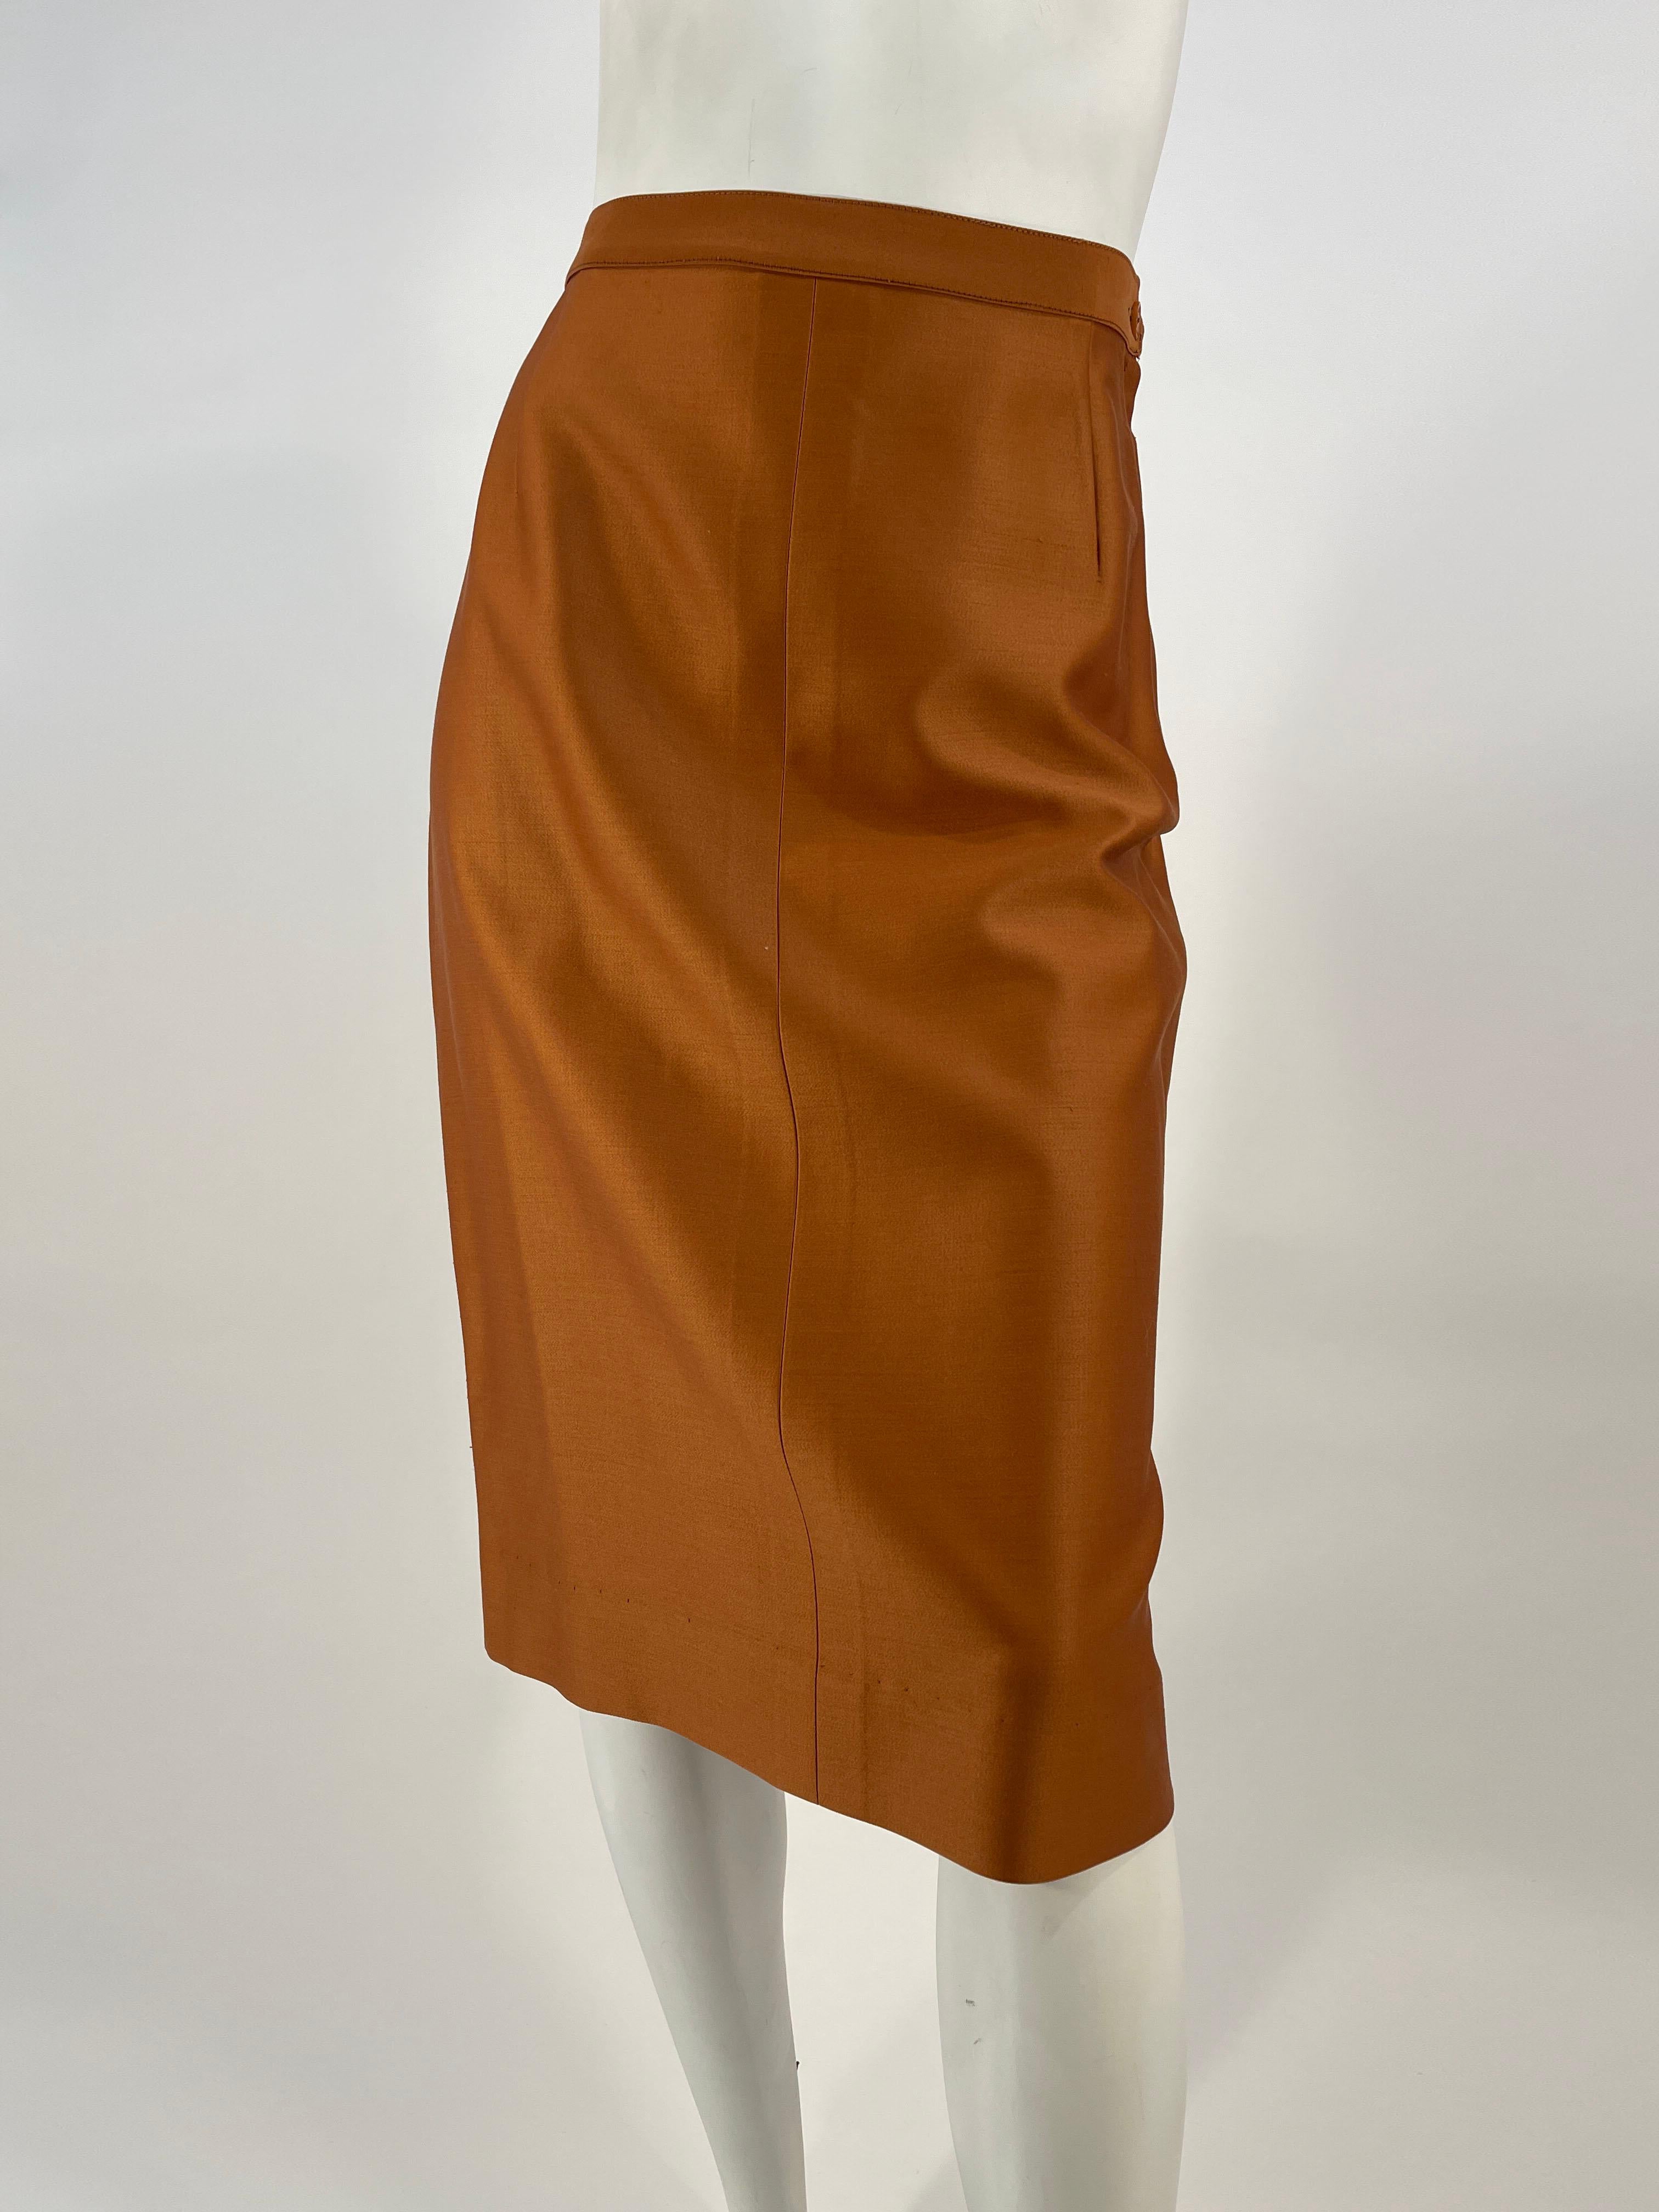 1950s Lilli Ann Rust Suit For Sale 4